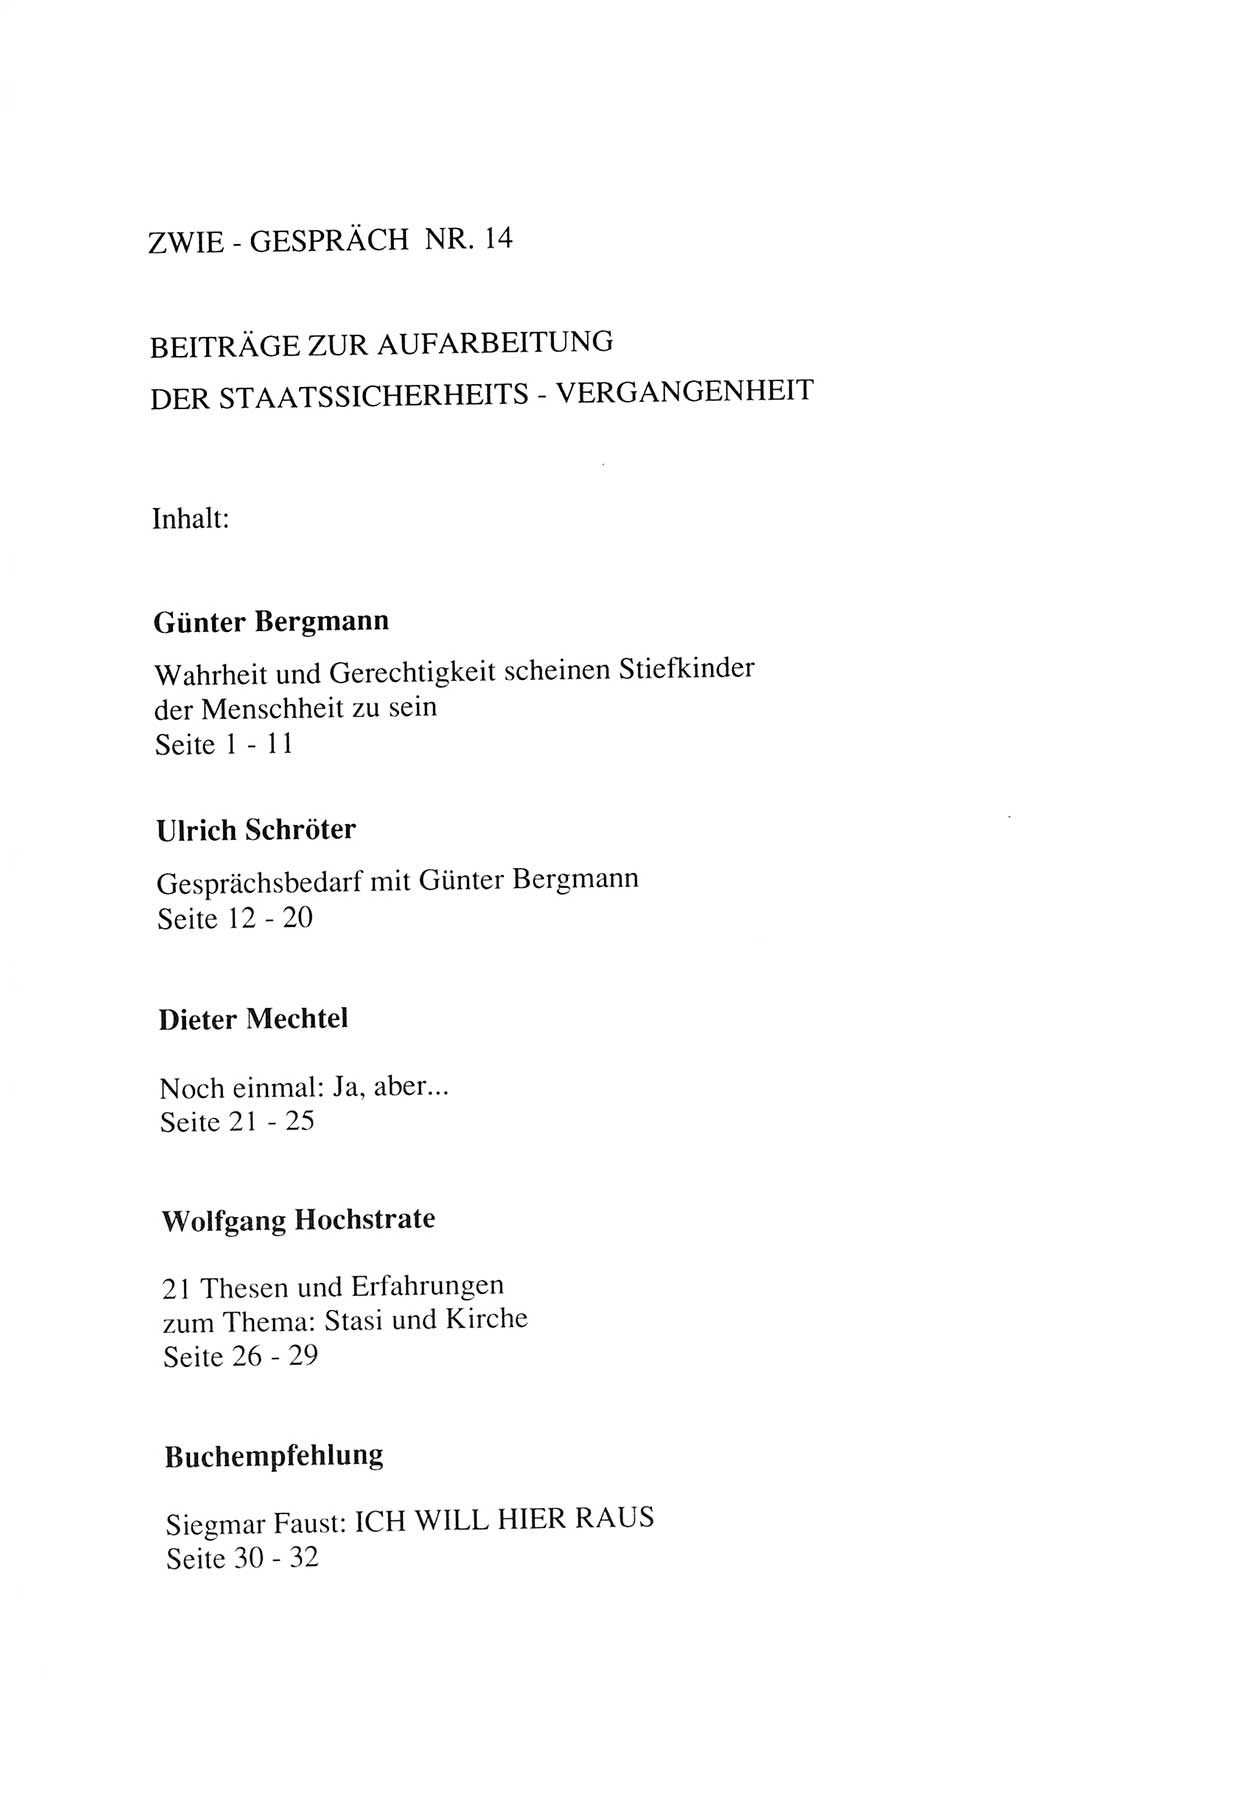 Zwie-Gespräch, Beiträge zur Aufarbeitung der Staatssicherheits-Vergangenheit [Deutsche Demokratische Republik (DDR)], Ausgabe Nr. 14, Berlin 1993, Seite 33 (Zwie-Gespr. Ausg. 14 1993, S. 33)